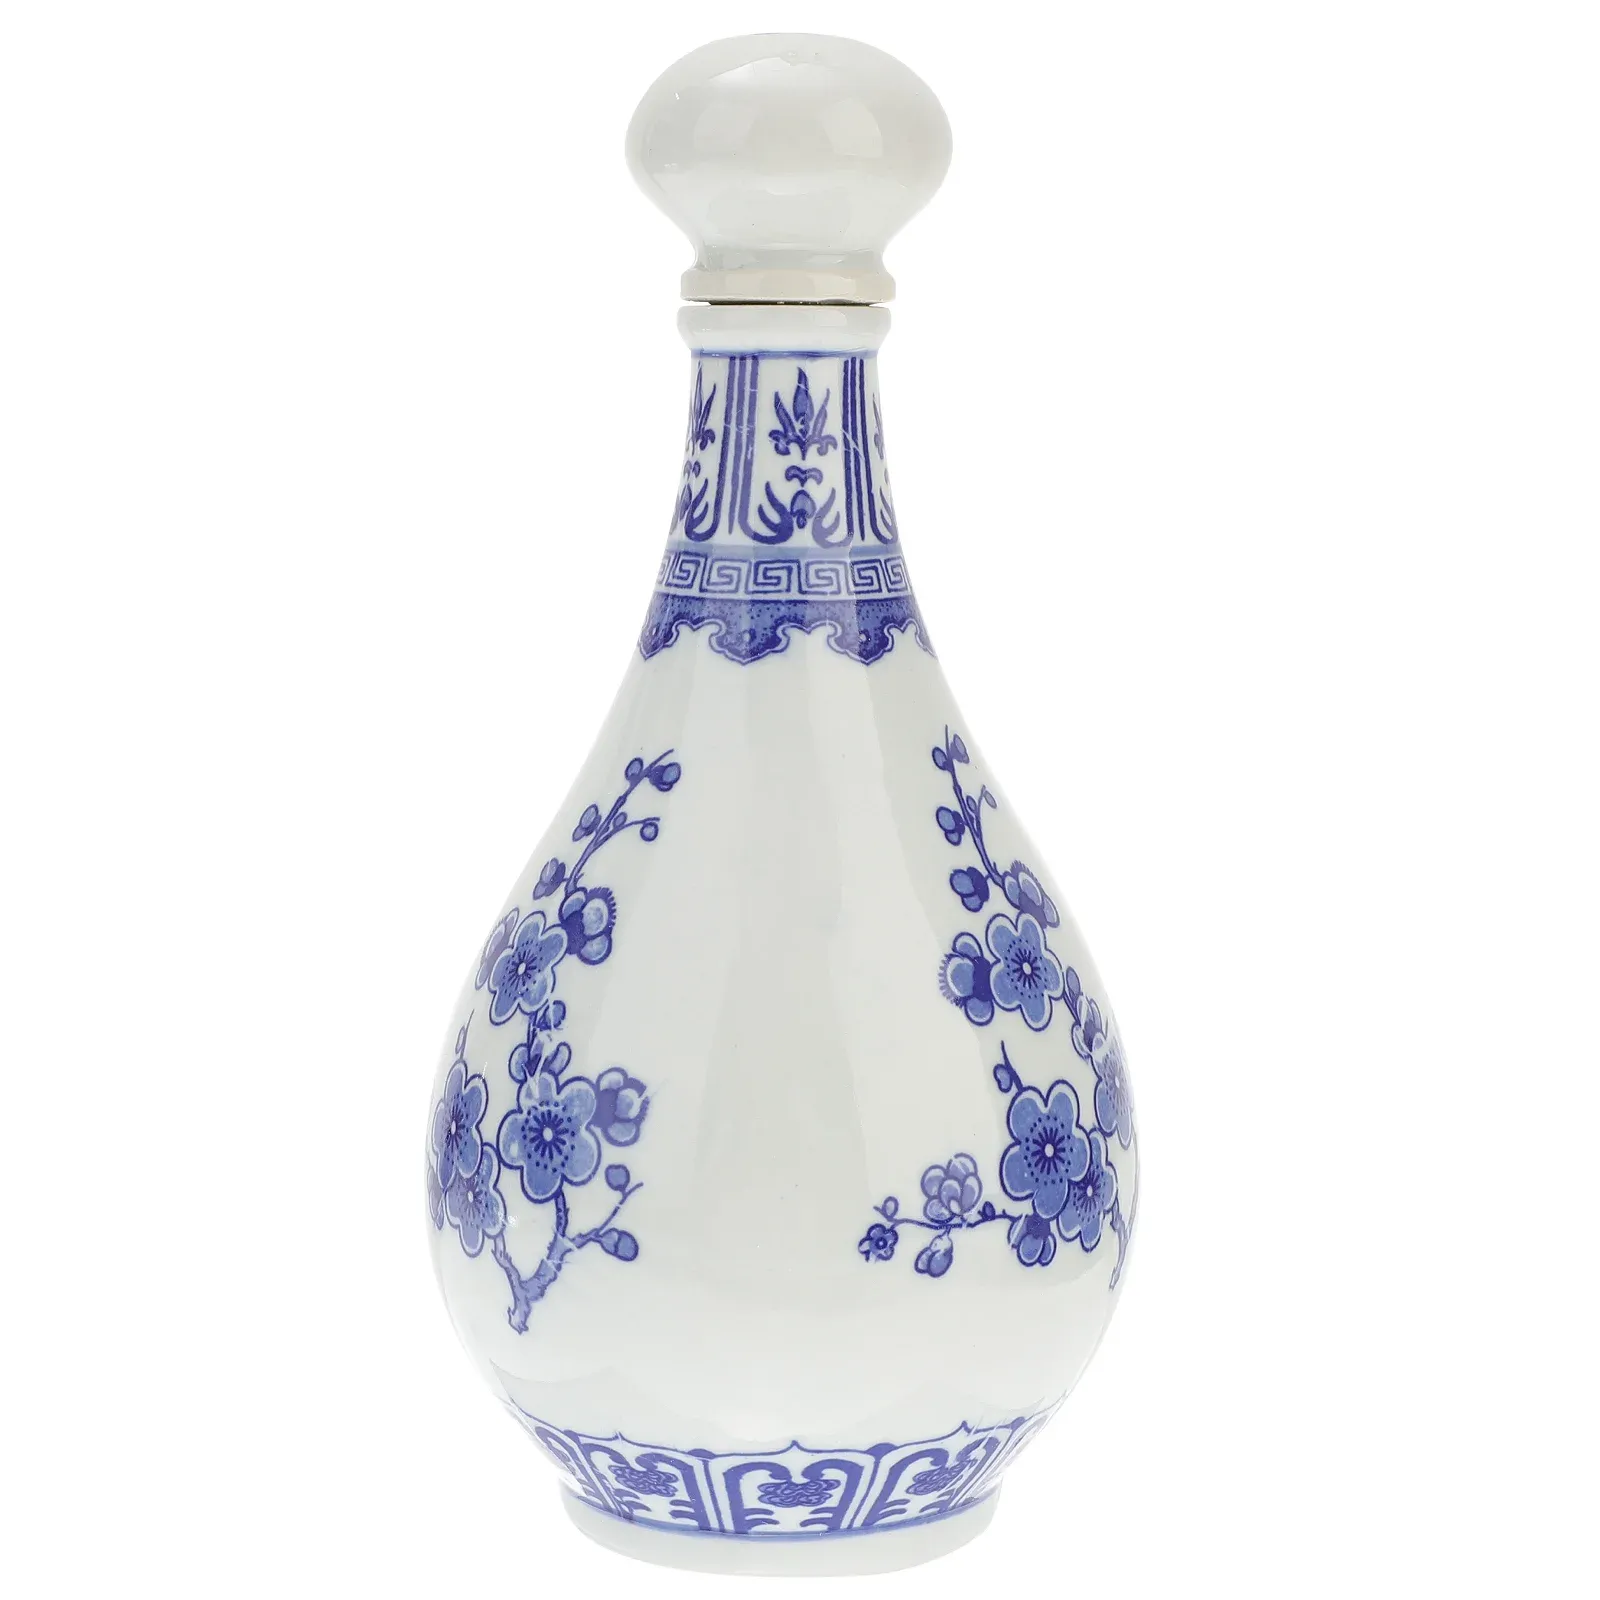 Wazony butelka chińska sake ceramiczny garnek jar jag biały niebieski japoński pojemnik porcelanowy vintage kolba Cruet Gourd retro tokkuri serwowanie